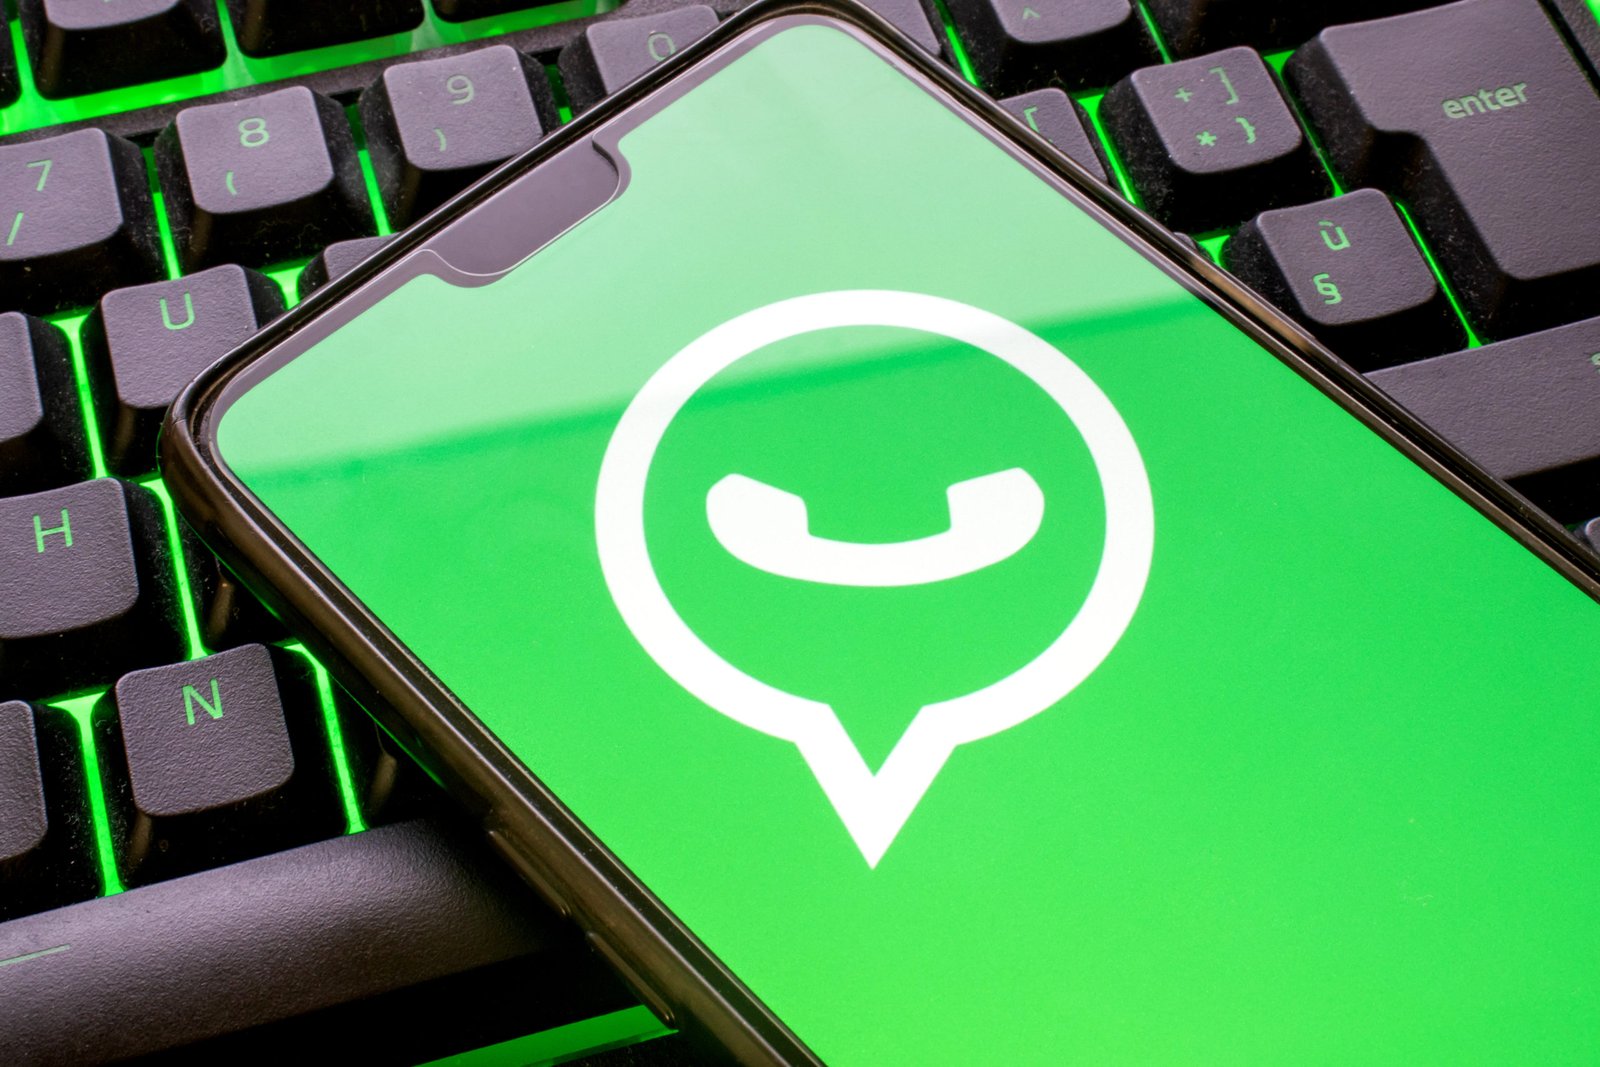 Como saber se o WhatsApp está atualizado: sua segurança está em risco